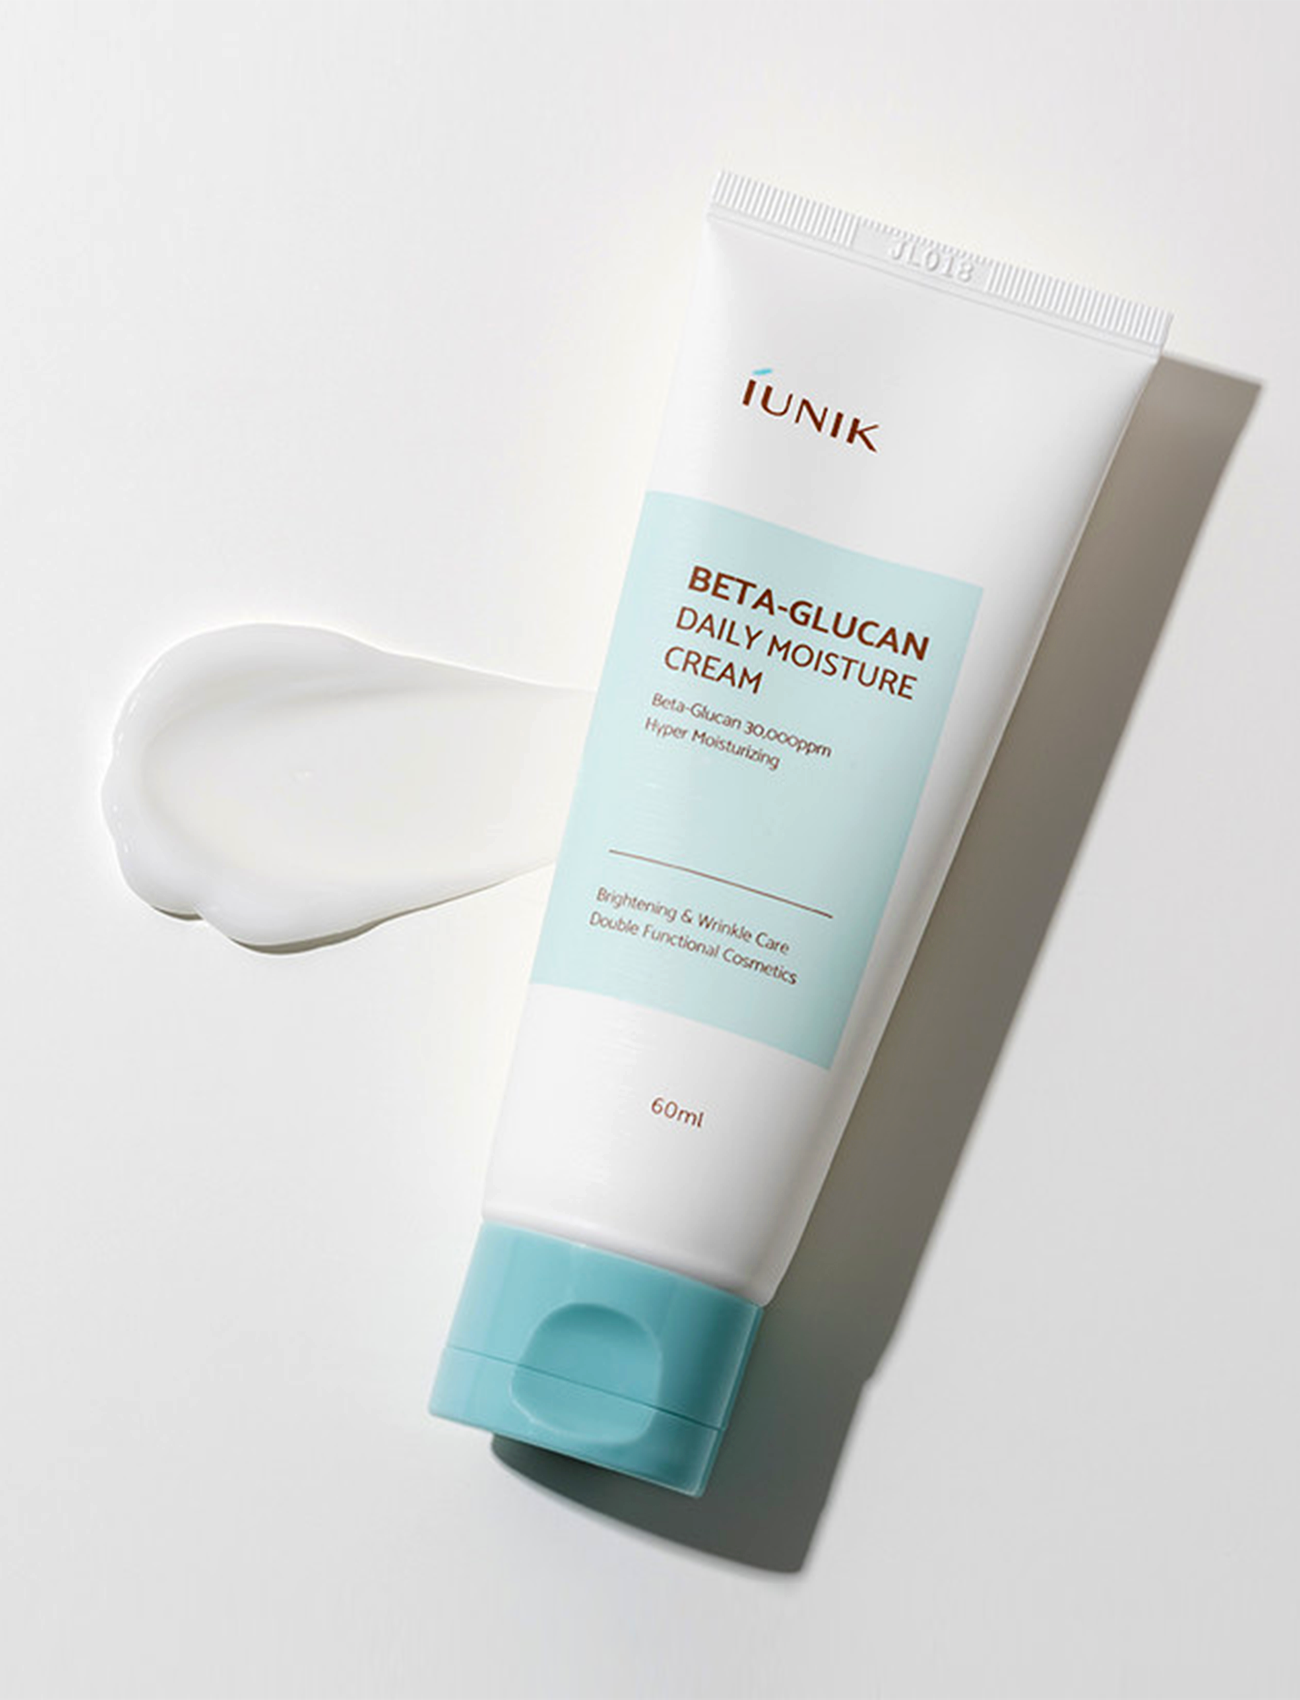 iUNIK Beta-Glucan Daily Moisture Cream mit der Textur neben dem Produkt.